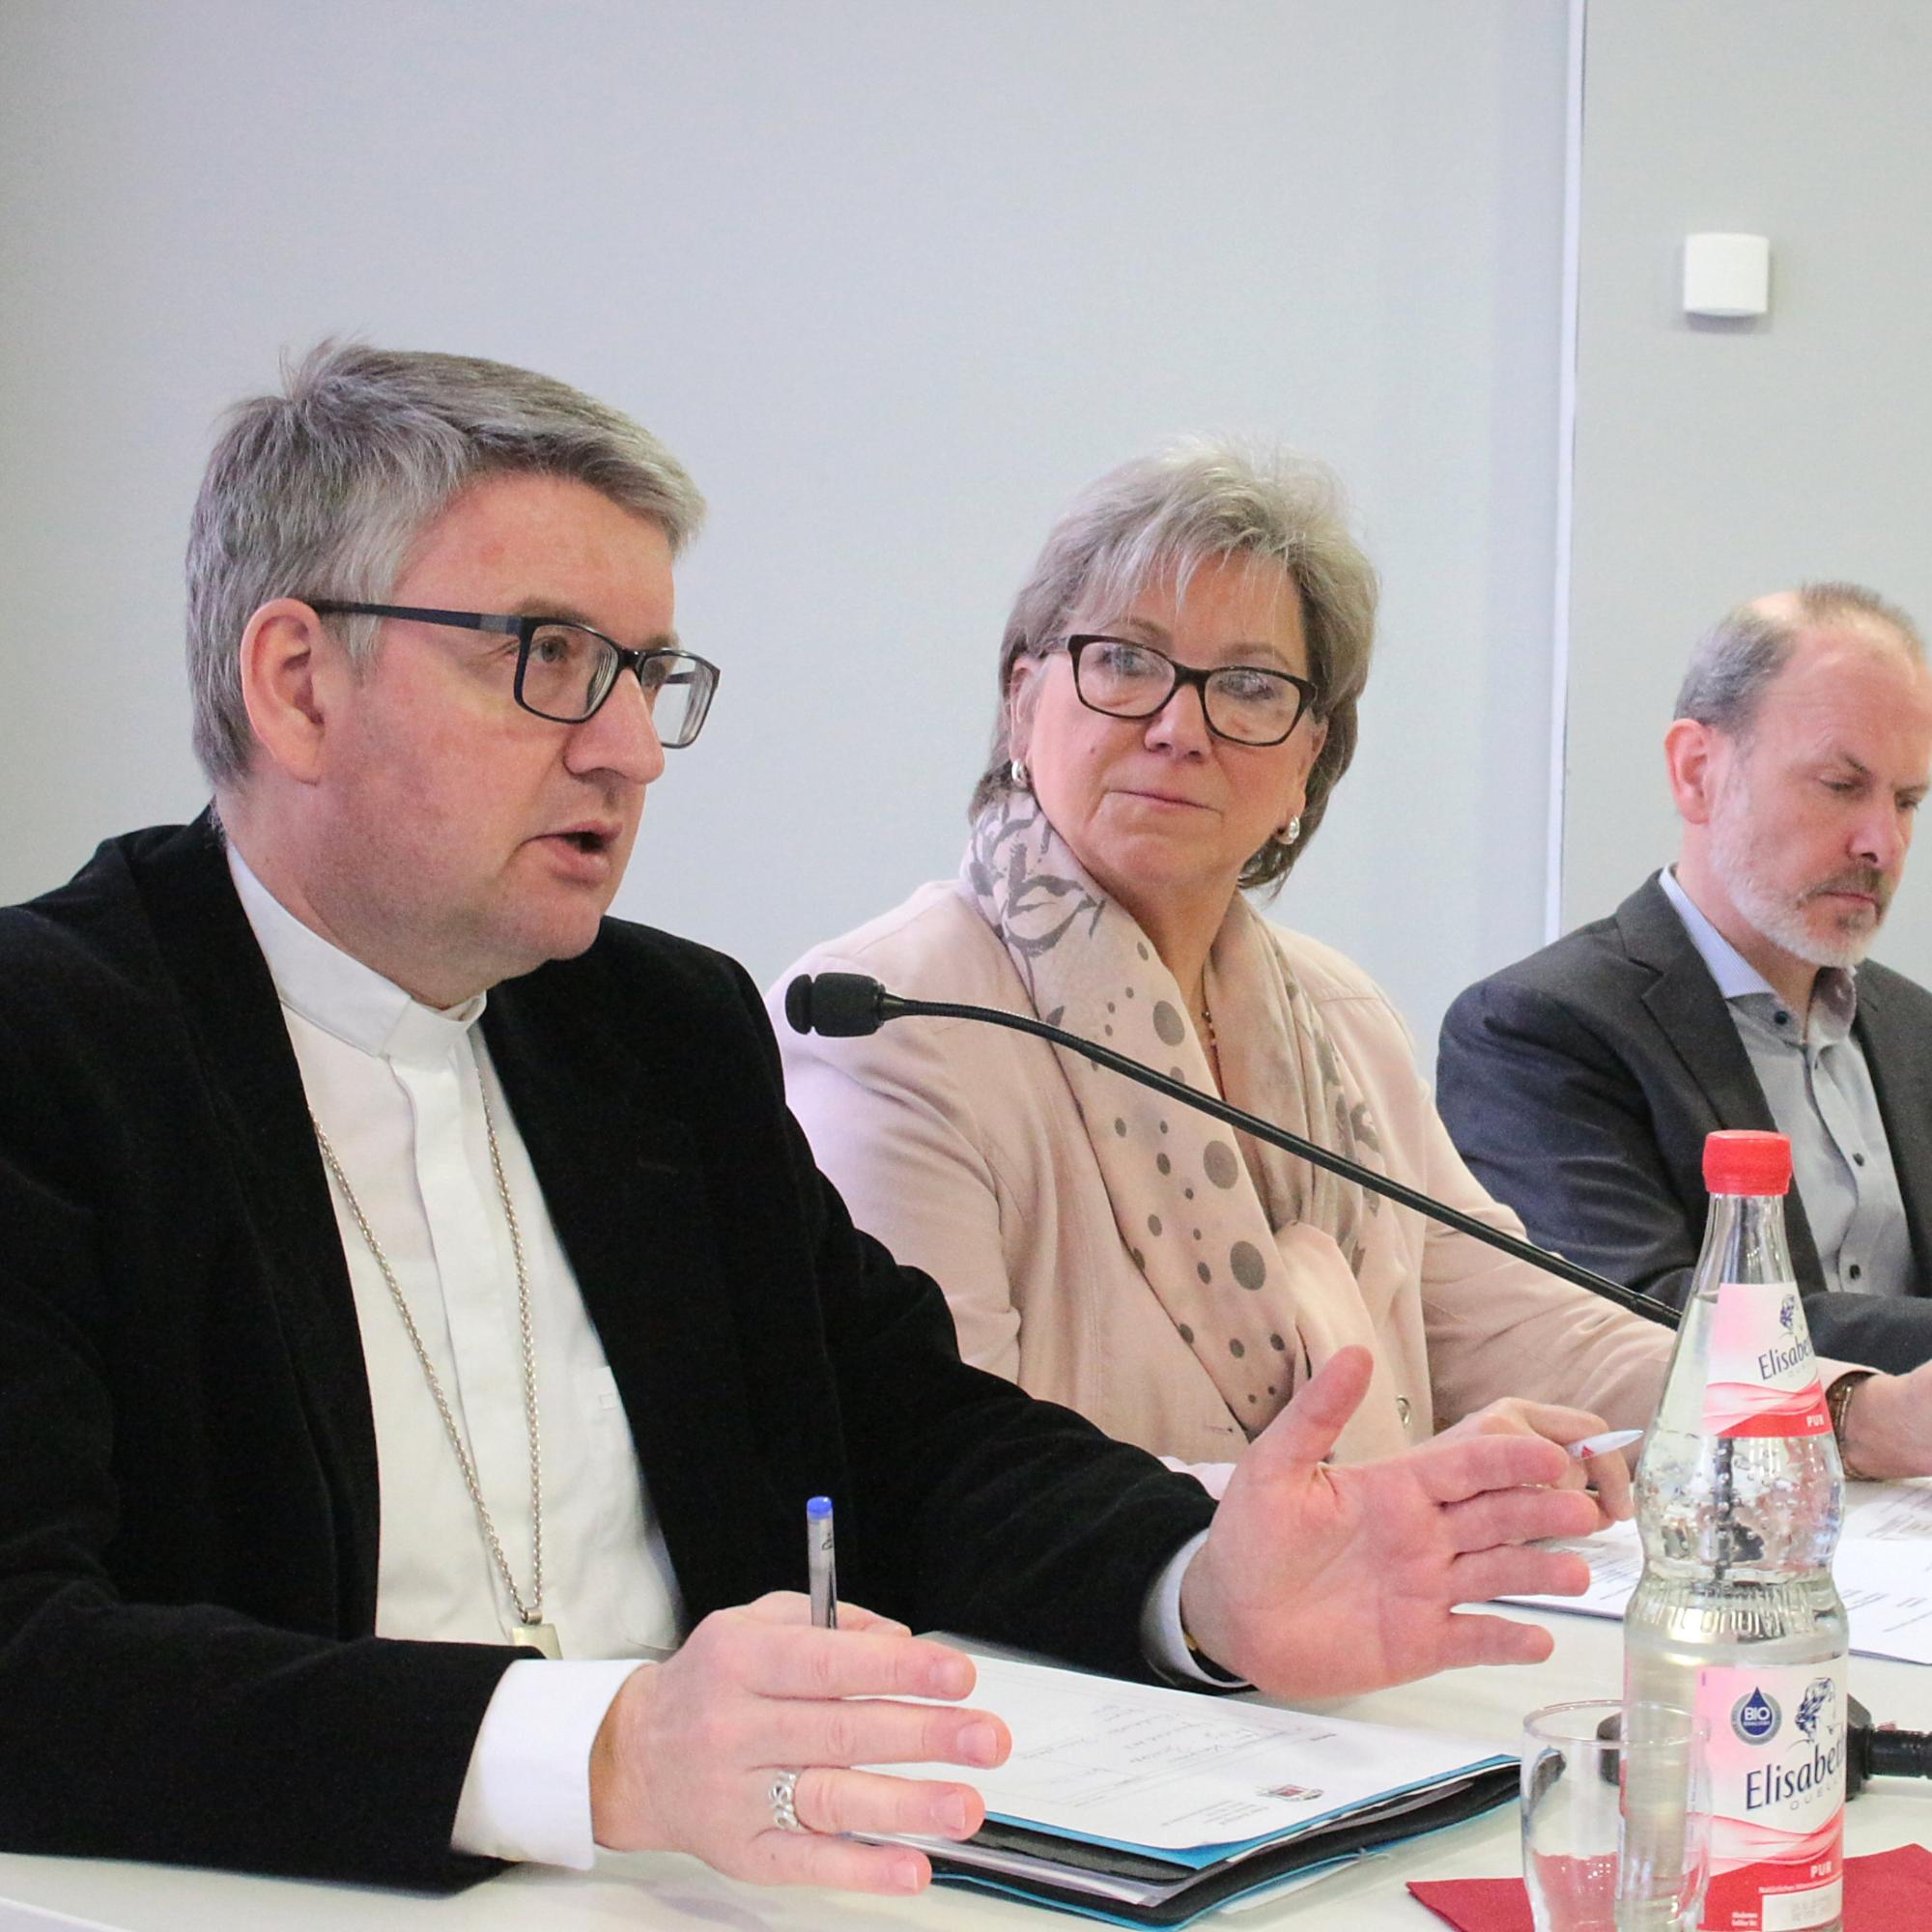 Mainz, 16. März 2019: Bischof Peter Kohlgraf (ganz links) berichtete bei der Sitzung des Katholikenrates unter anderem über die Beratungen der Deutschen Bischofskonferenz in Lingen.